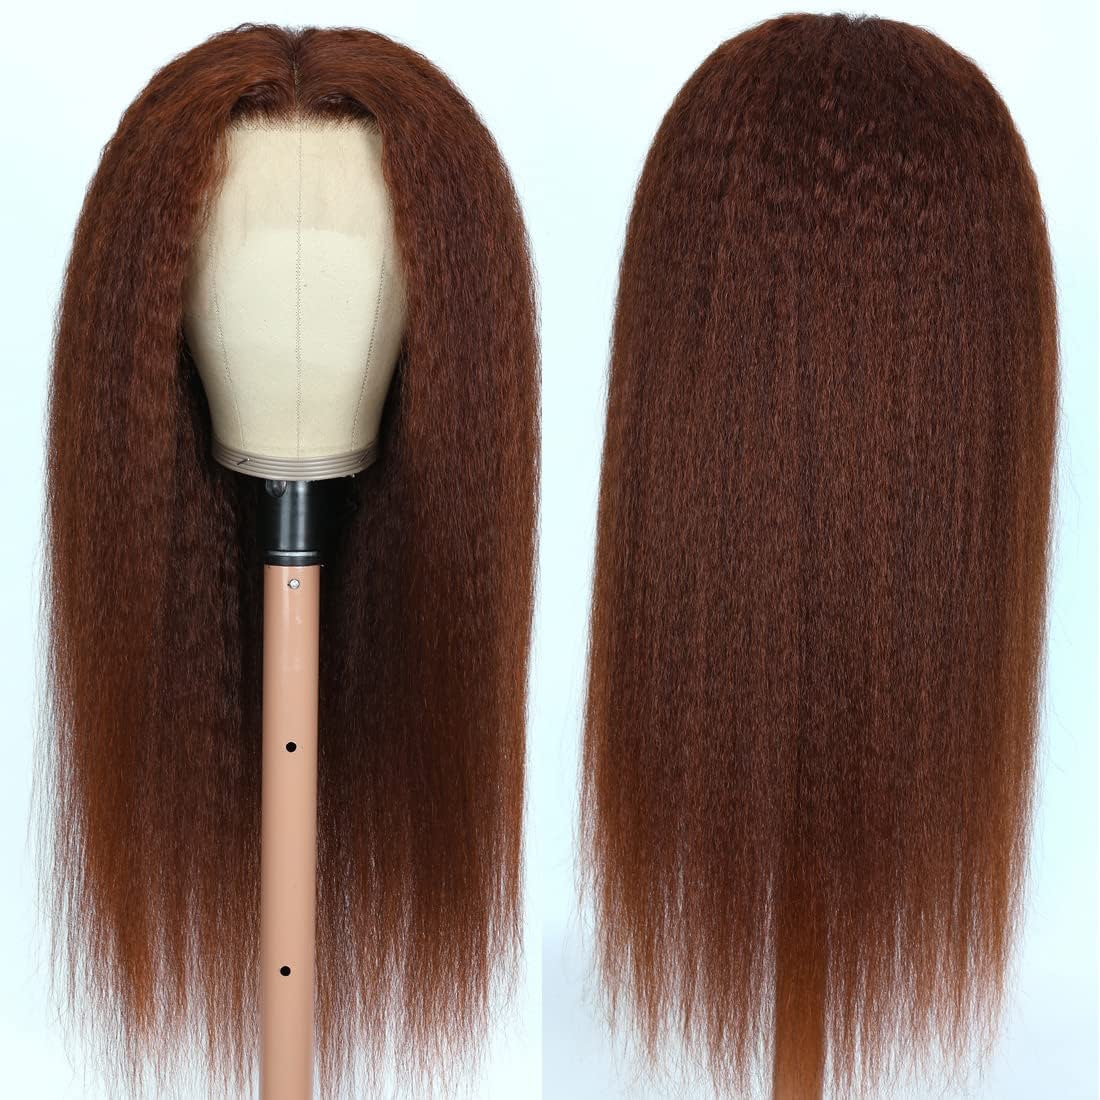 Moda Nuevas pelucas rectas rizadas de color marrón rojizo para mujeres negras Encaje de alta definición Pre desplumado Cabello humano Remy 13x4 Peluca delantera de encaje transparente 130% de densidad DIVA1